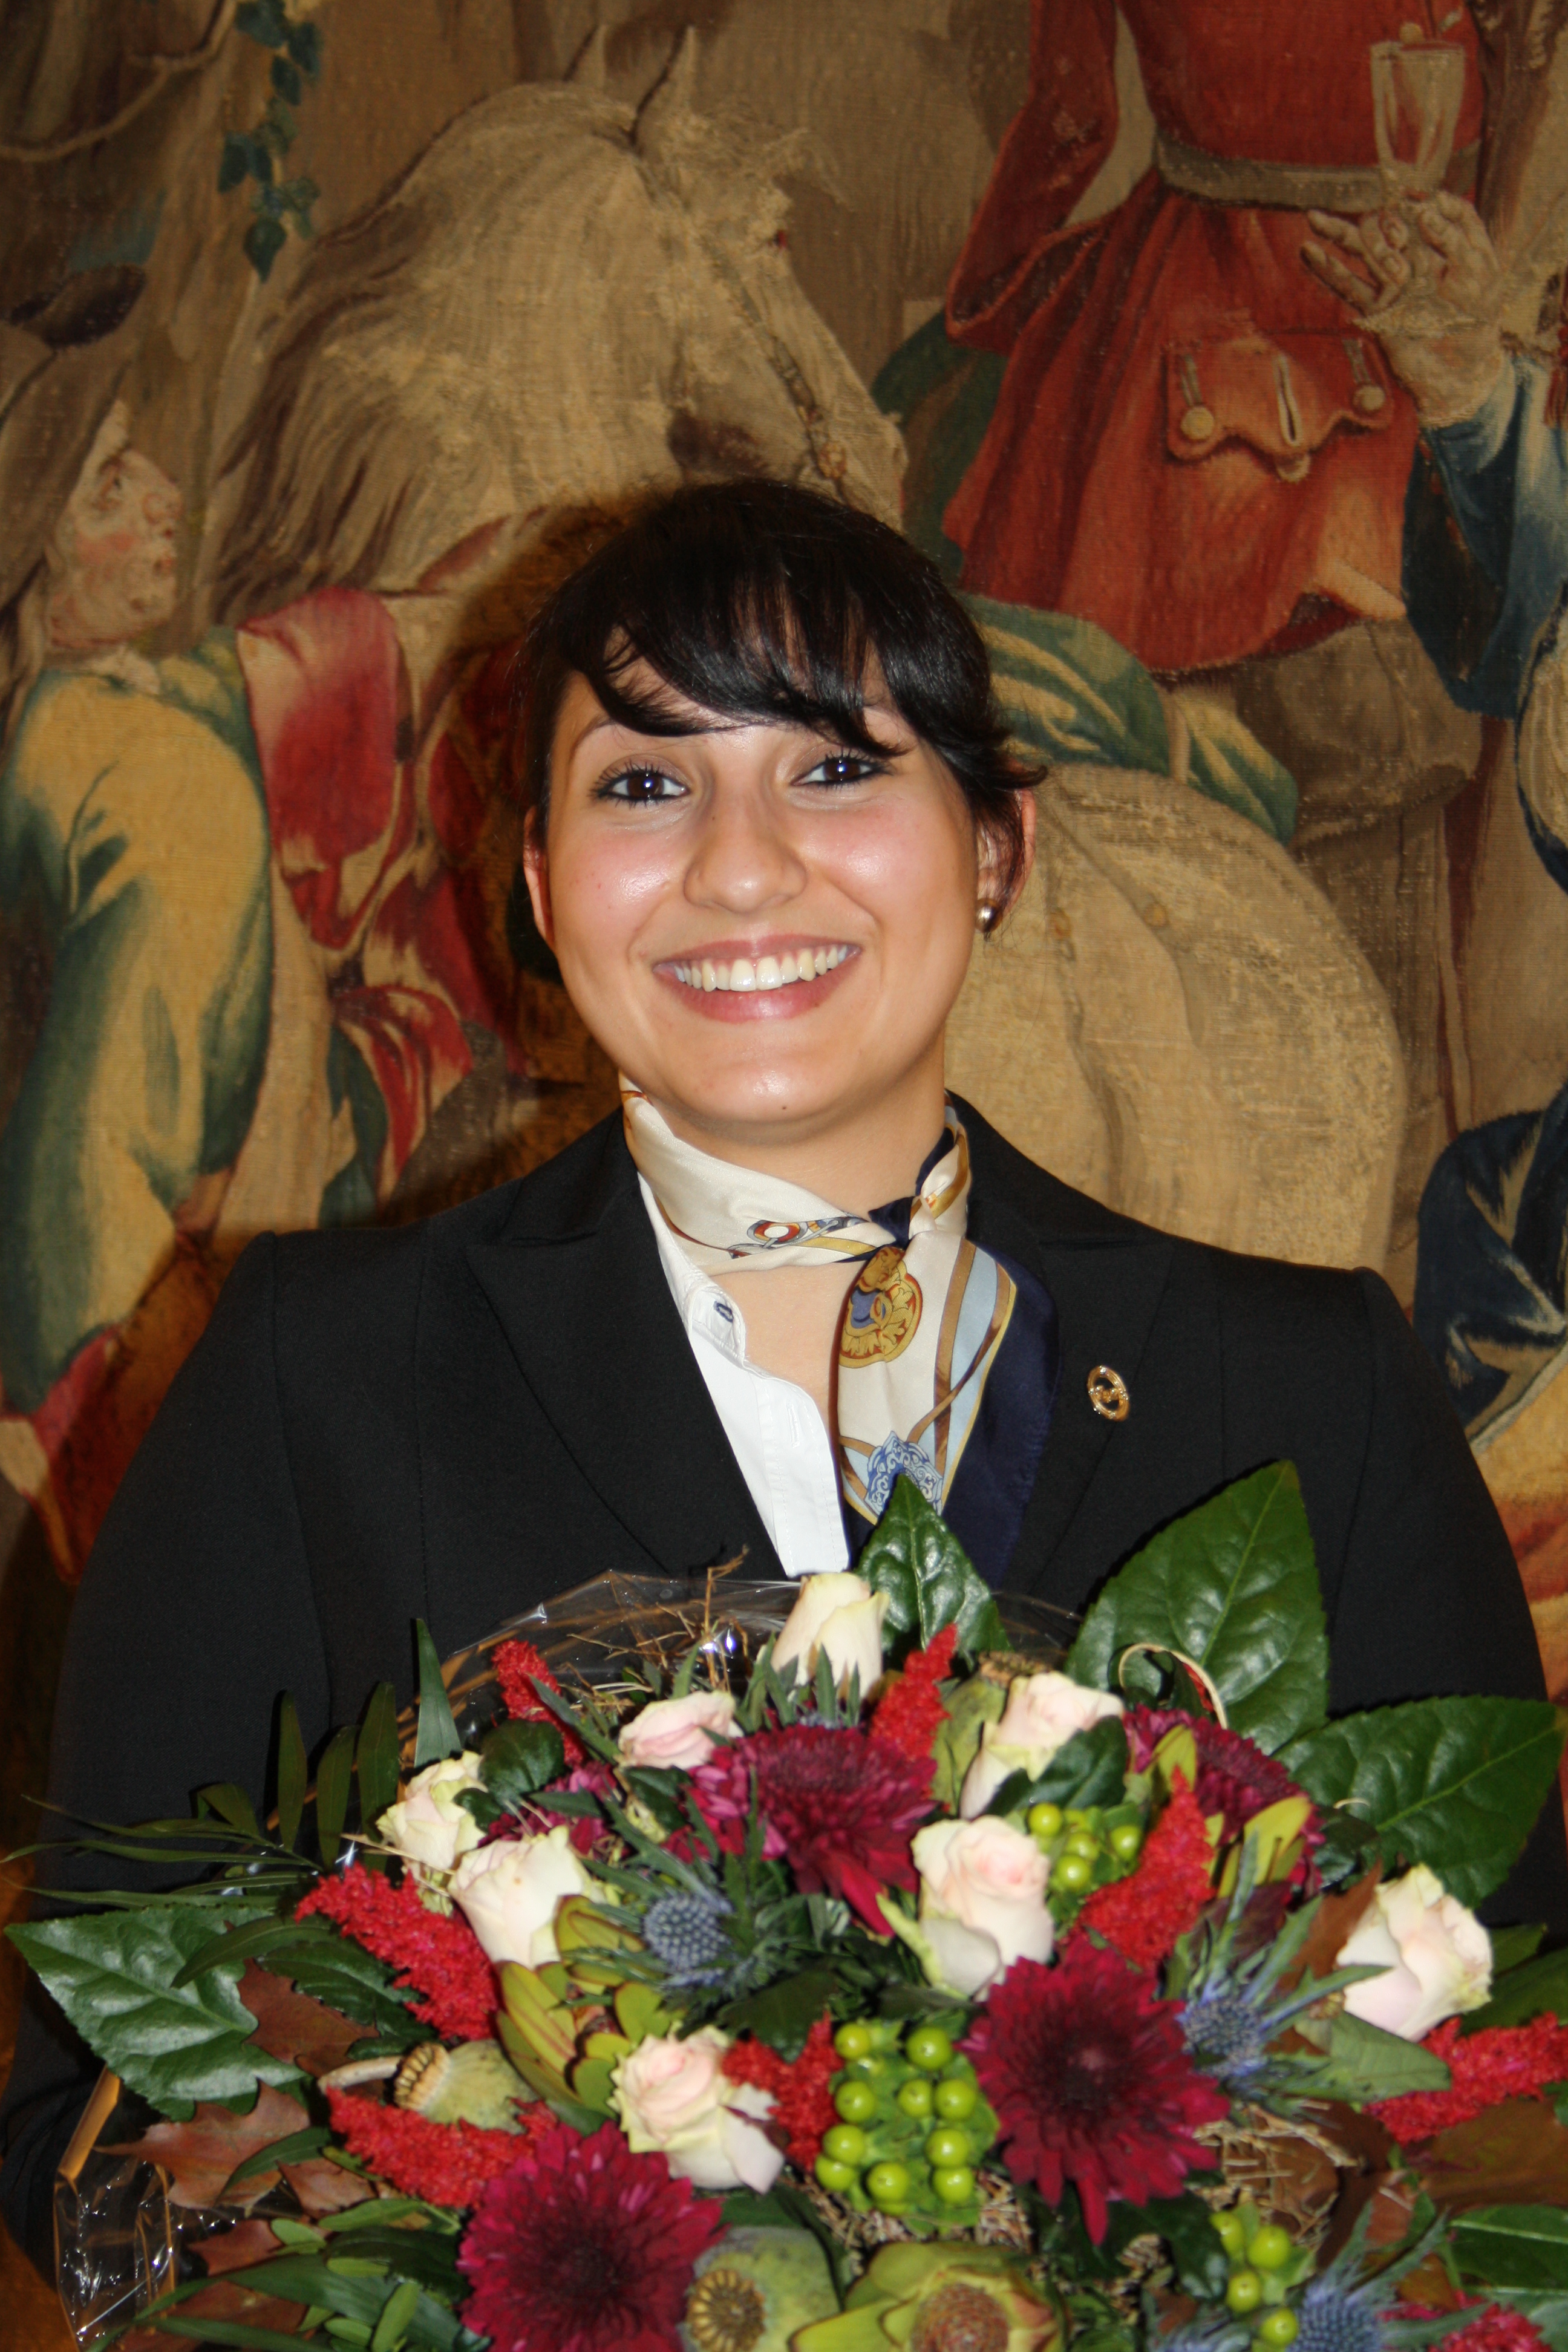 Rezeptionistin des Jahres 2012: Rima Barakat aus dem Excelsior Ernst Hotel in Köln